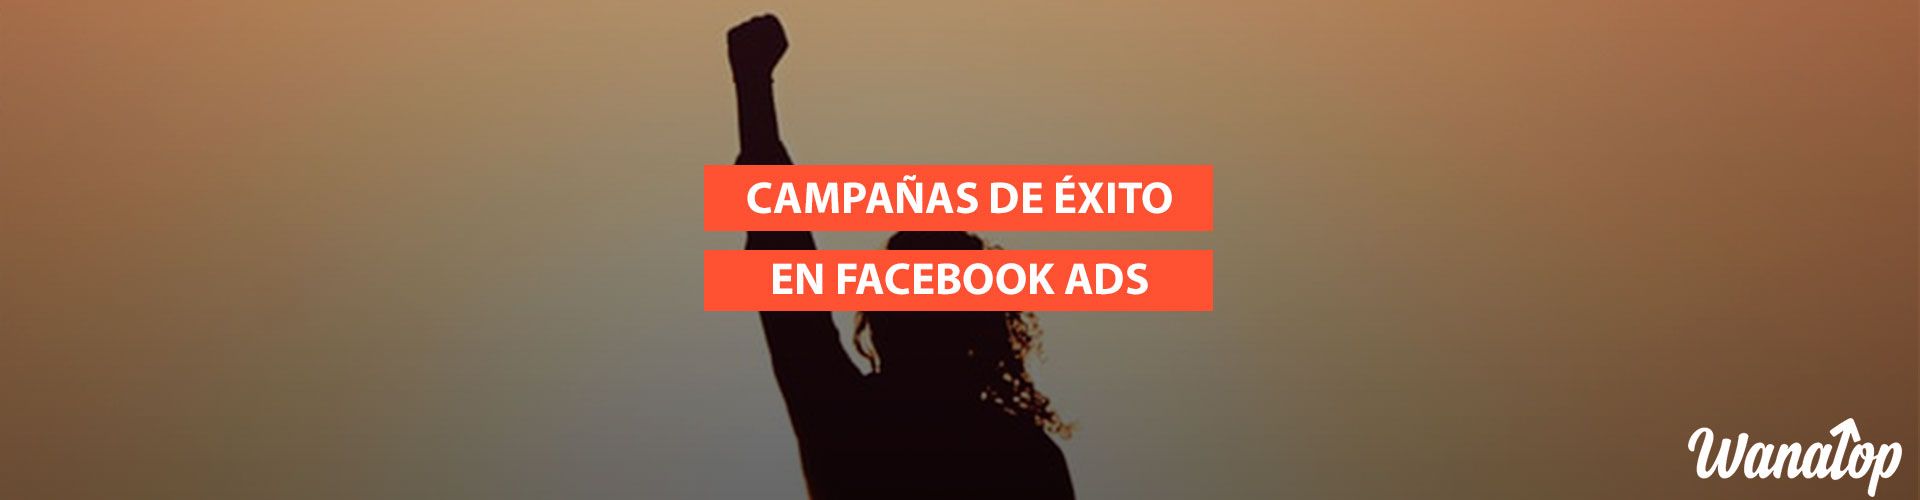 campanas exito facebook ads 10 Consejos para hacer campañas de éxito en Facebook Ads